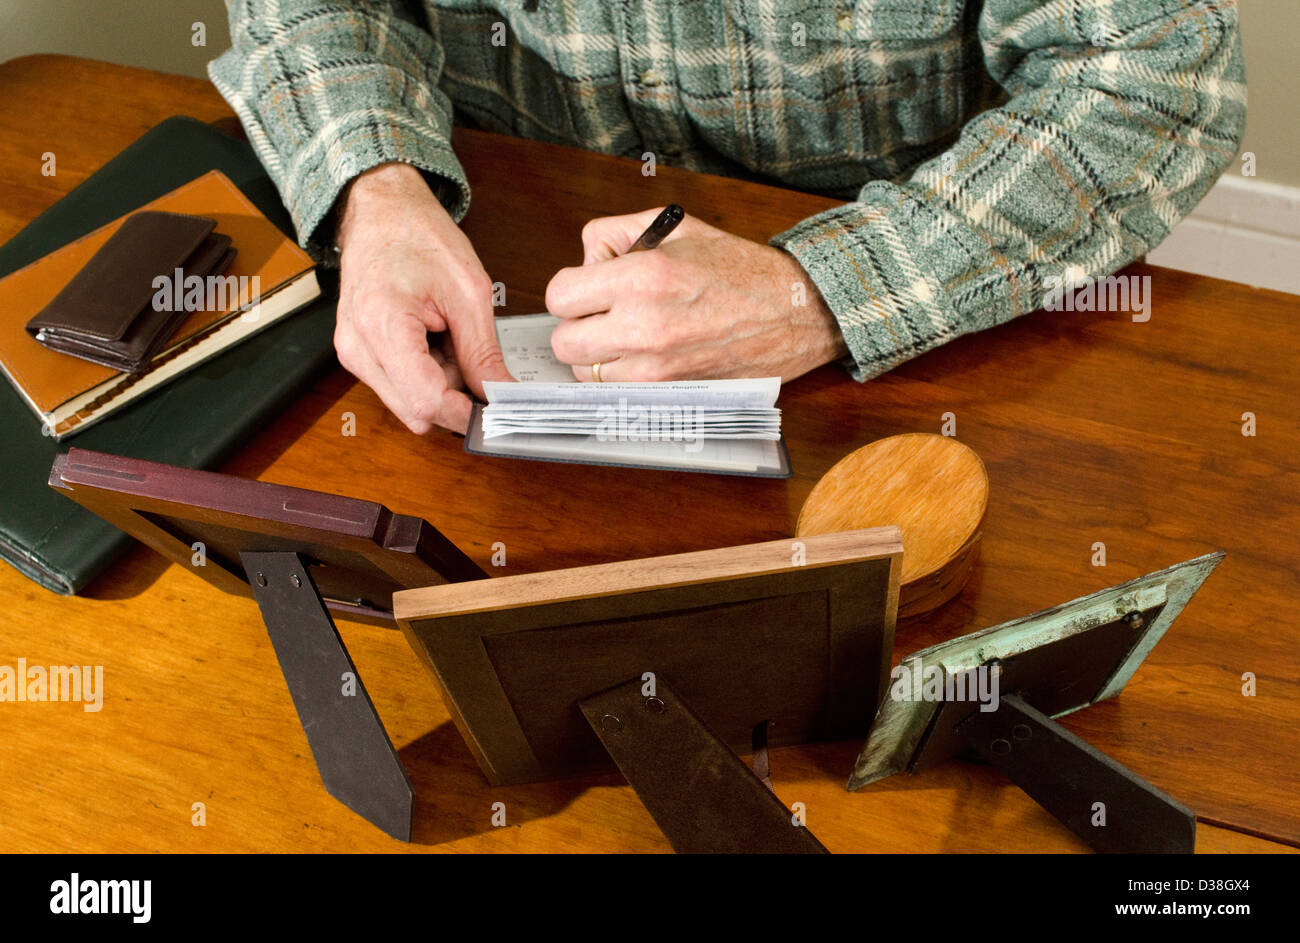 Hombre sentado en una mesa escribiendo verificar con chequera Foto de stock